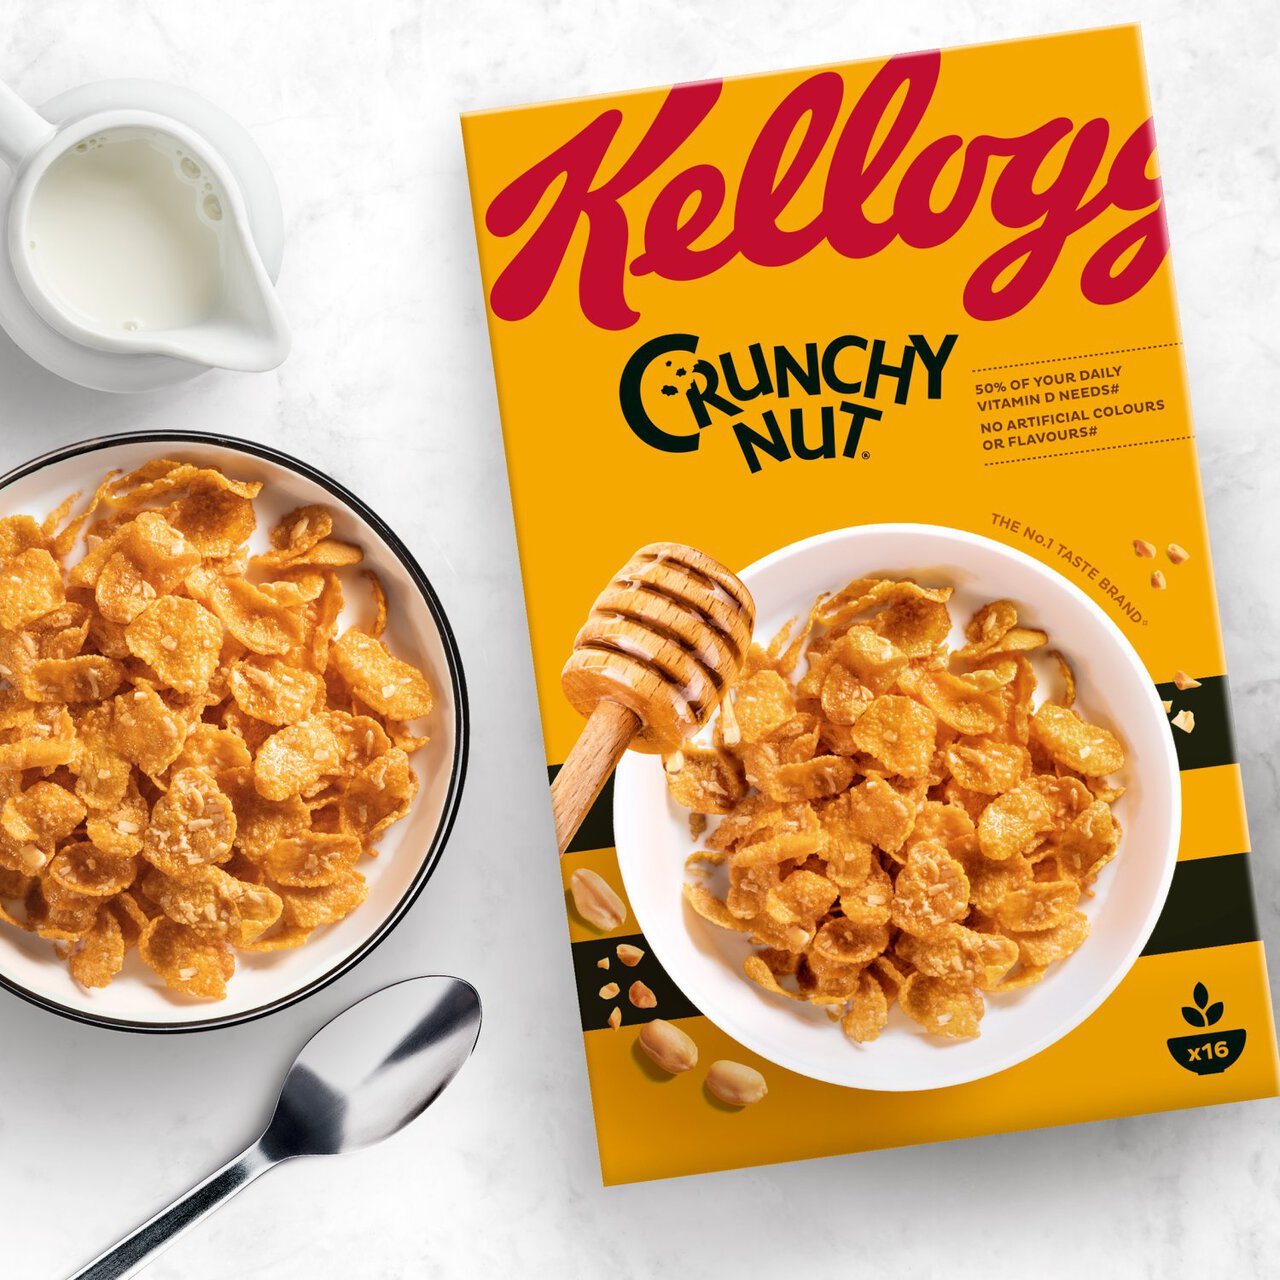 Kellogg's Crunchy Nut Breakfast Cereal 500g 500g